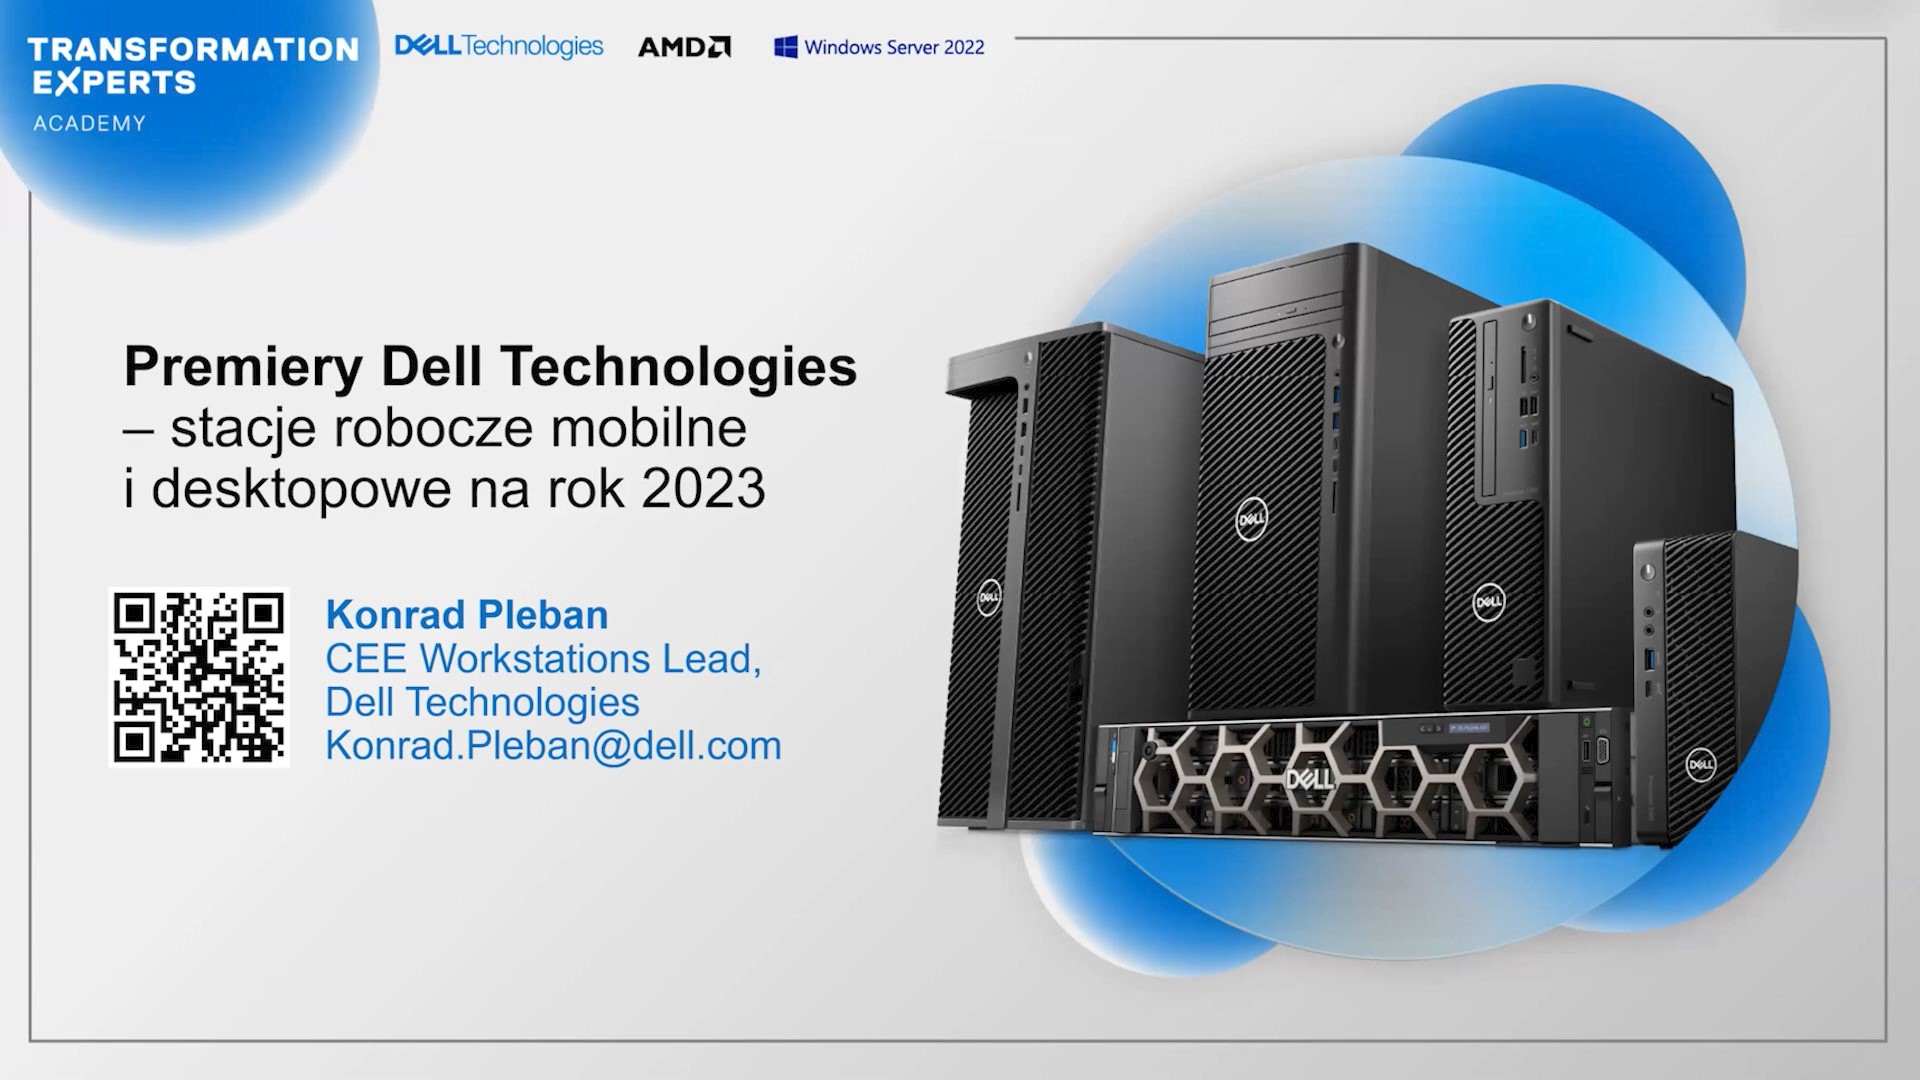 Zapis webinaru: Premiery Dell Technologies – stacje robocze mobilne i desktopowe na rok 2023